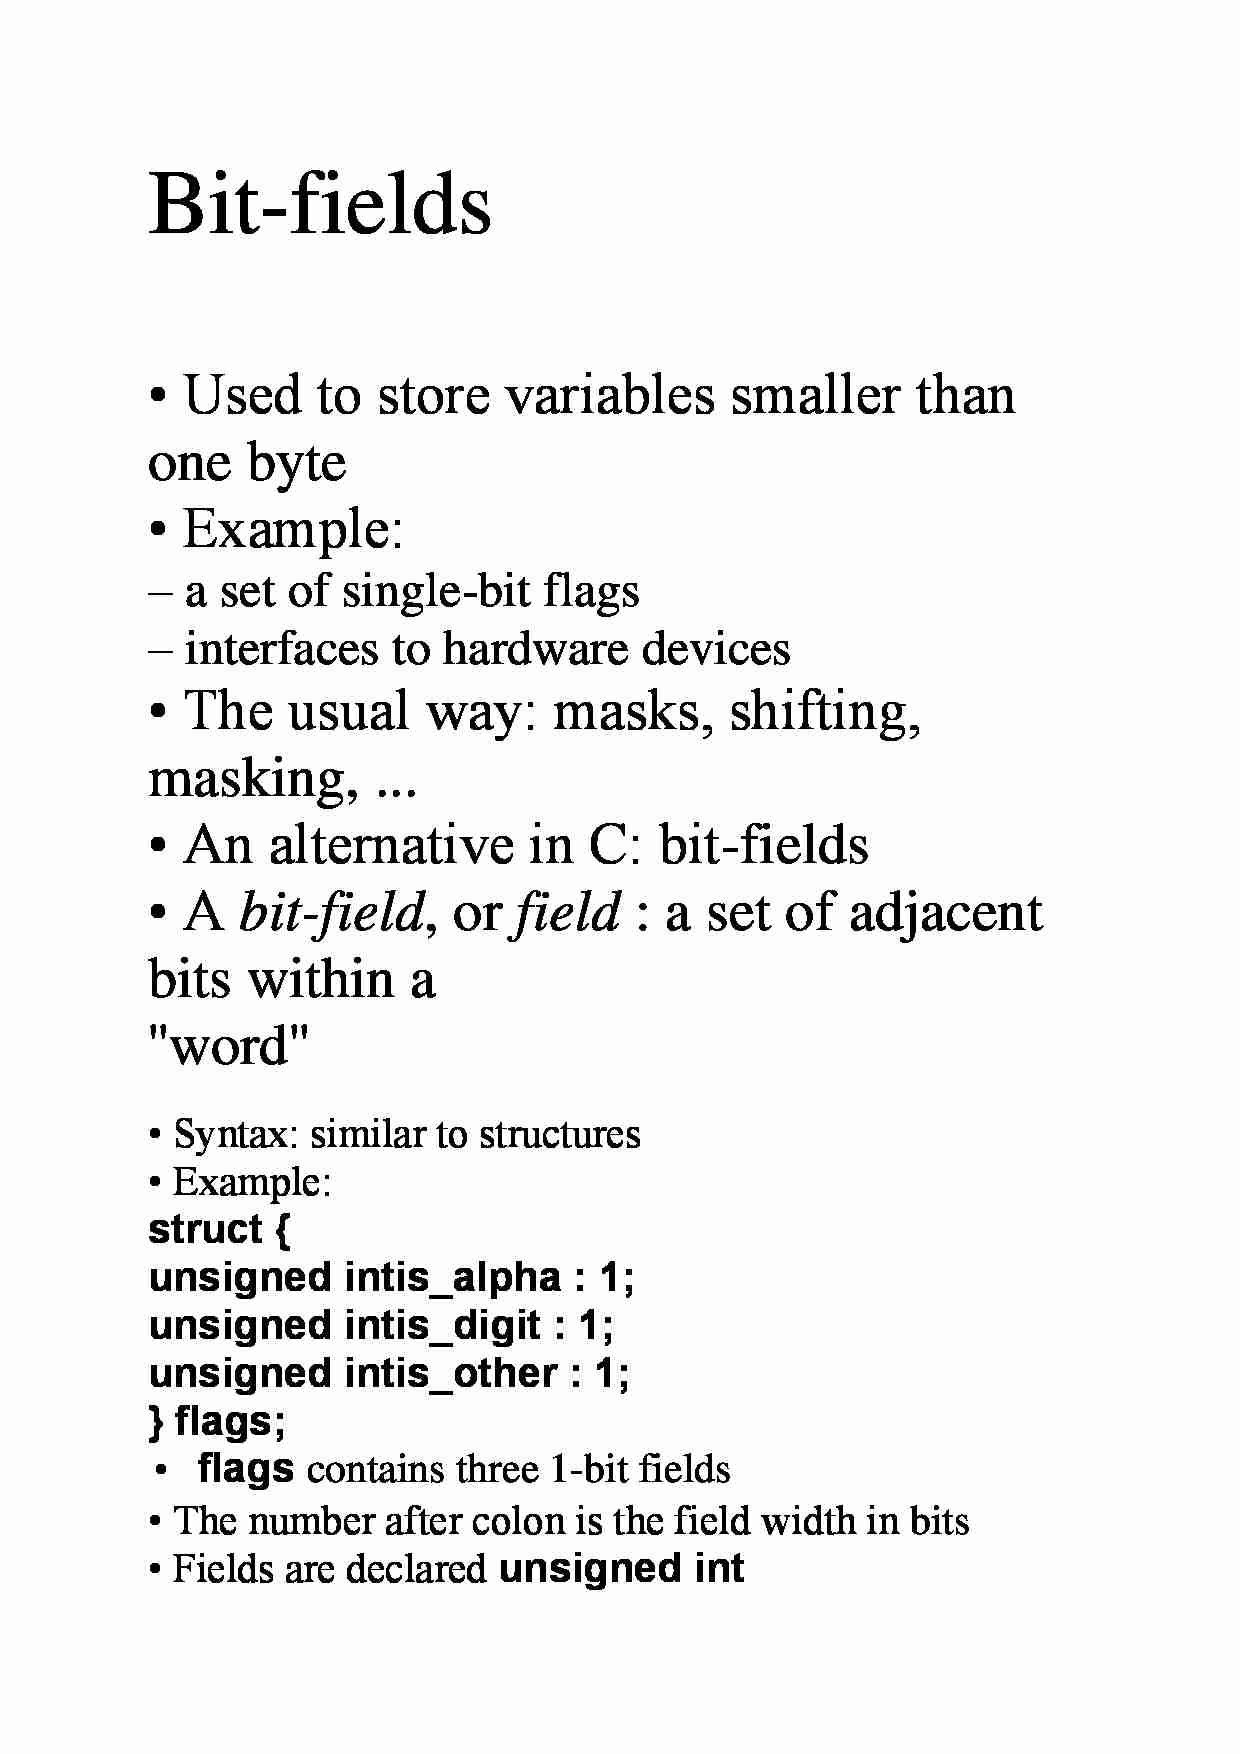 Bit fields - omówienie zagadnienia  - strona 1